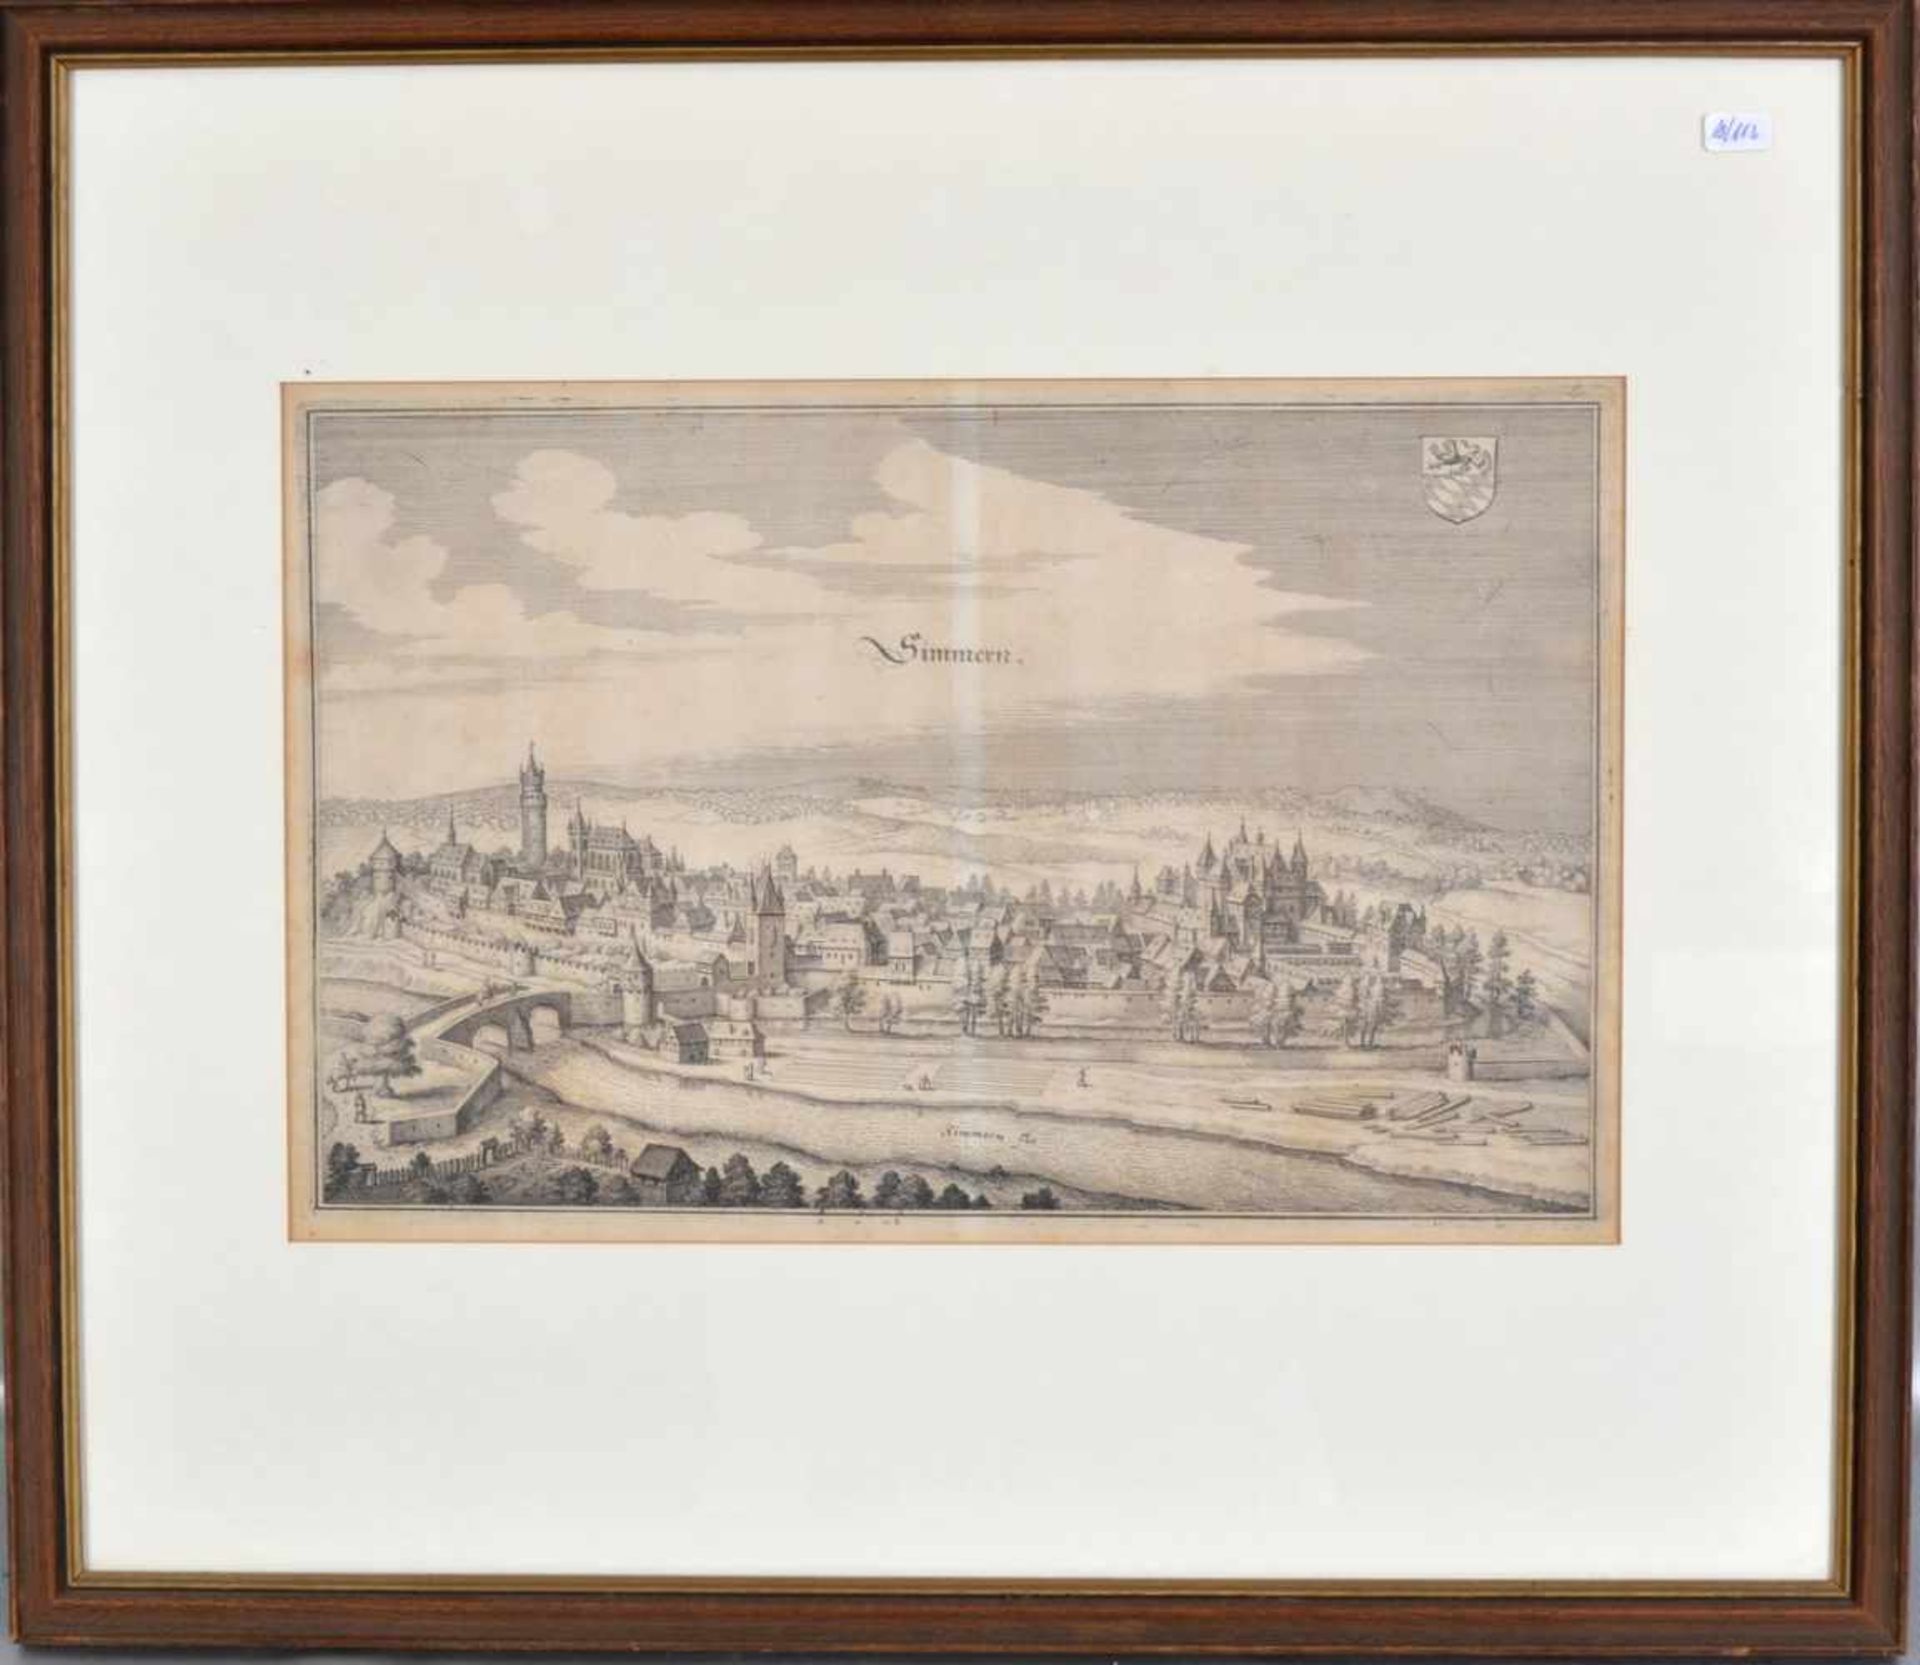 Kupferstich Ansicht von Simmern im Hunsrück, Blattgröße 23 X 35 cm, im Rahmen, 44 X 51 cm, 17. Jh.